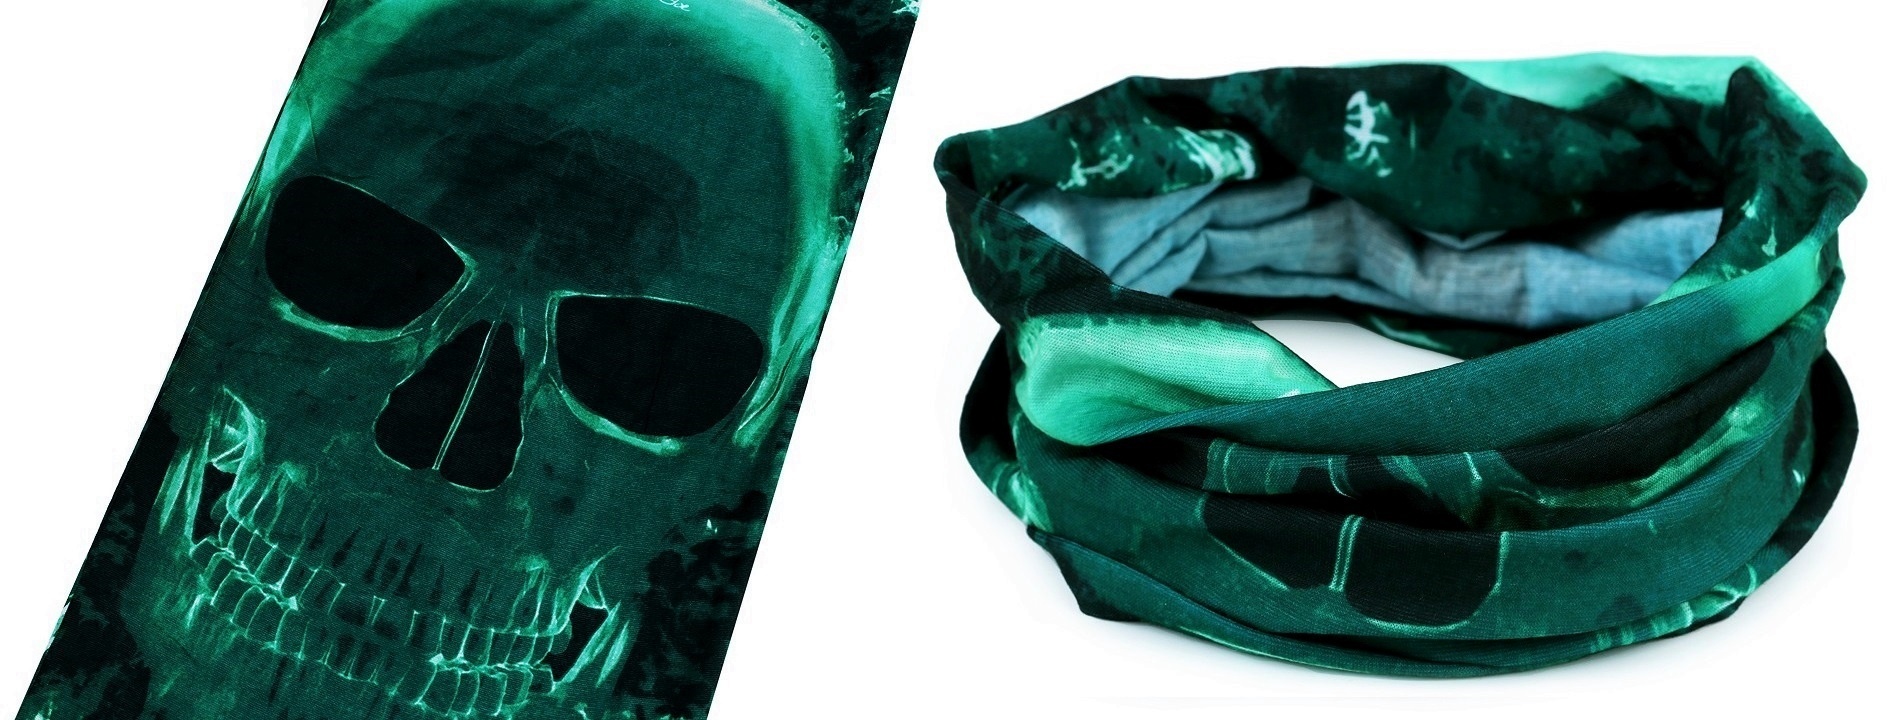 Šátek multifunkční s temně zelenou lebkou